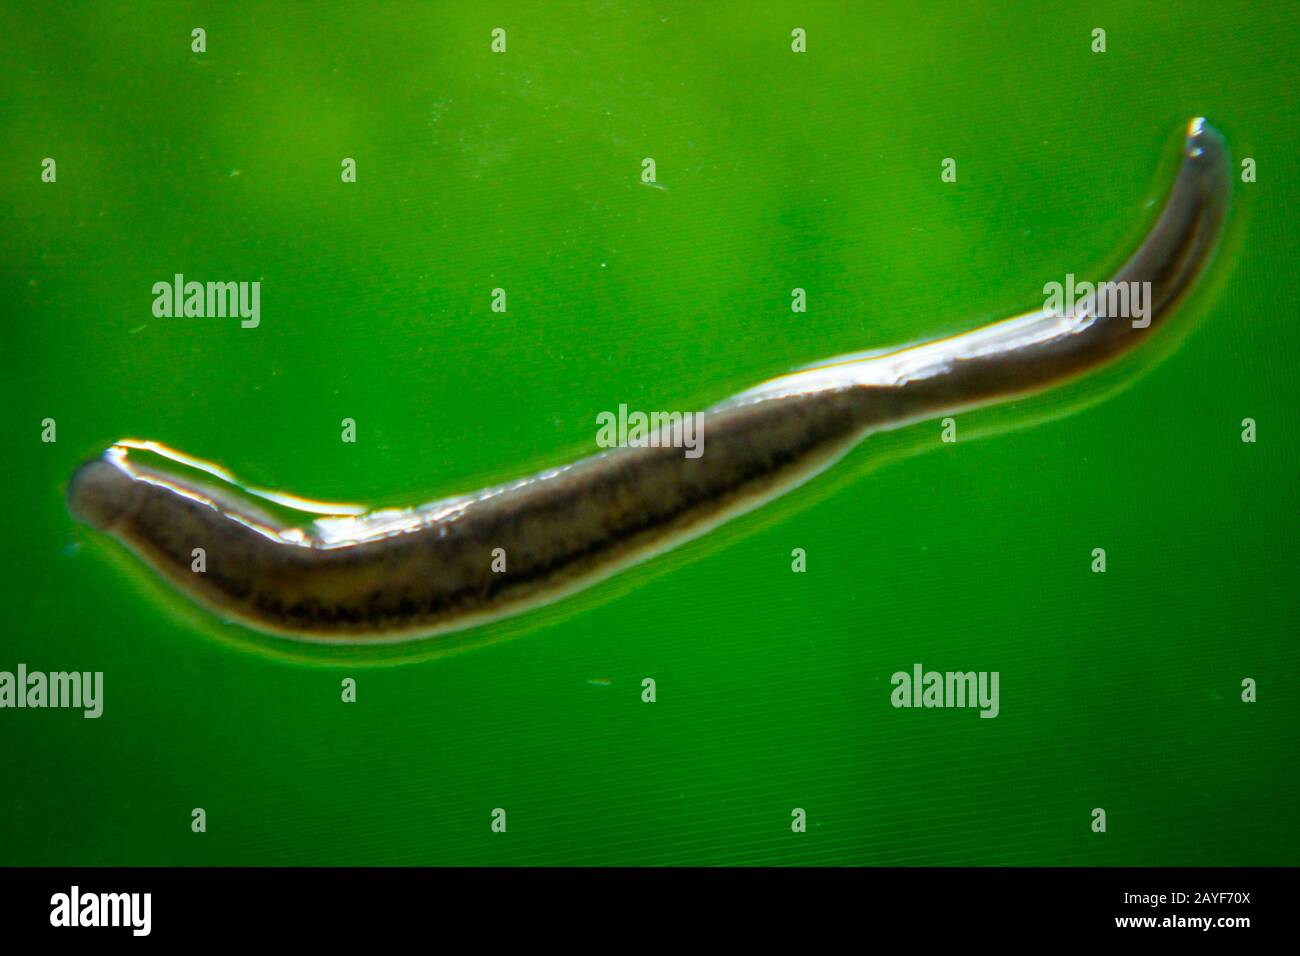 Macro of an Asian leech, about 1 cm long Stock Photo